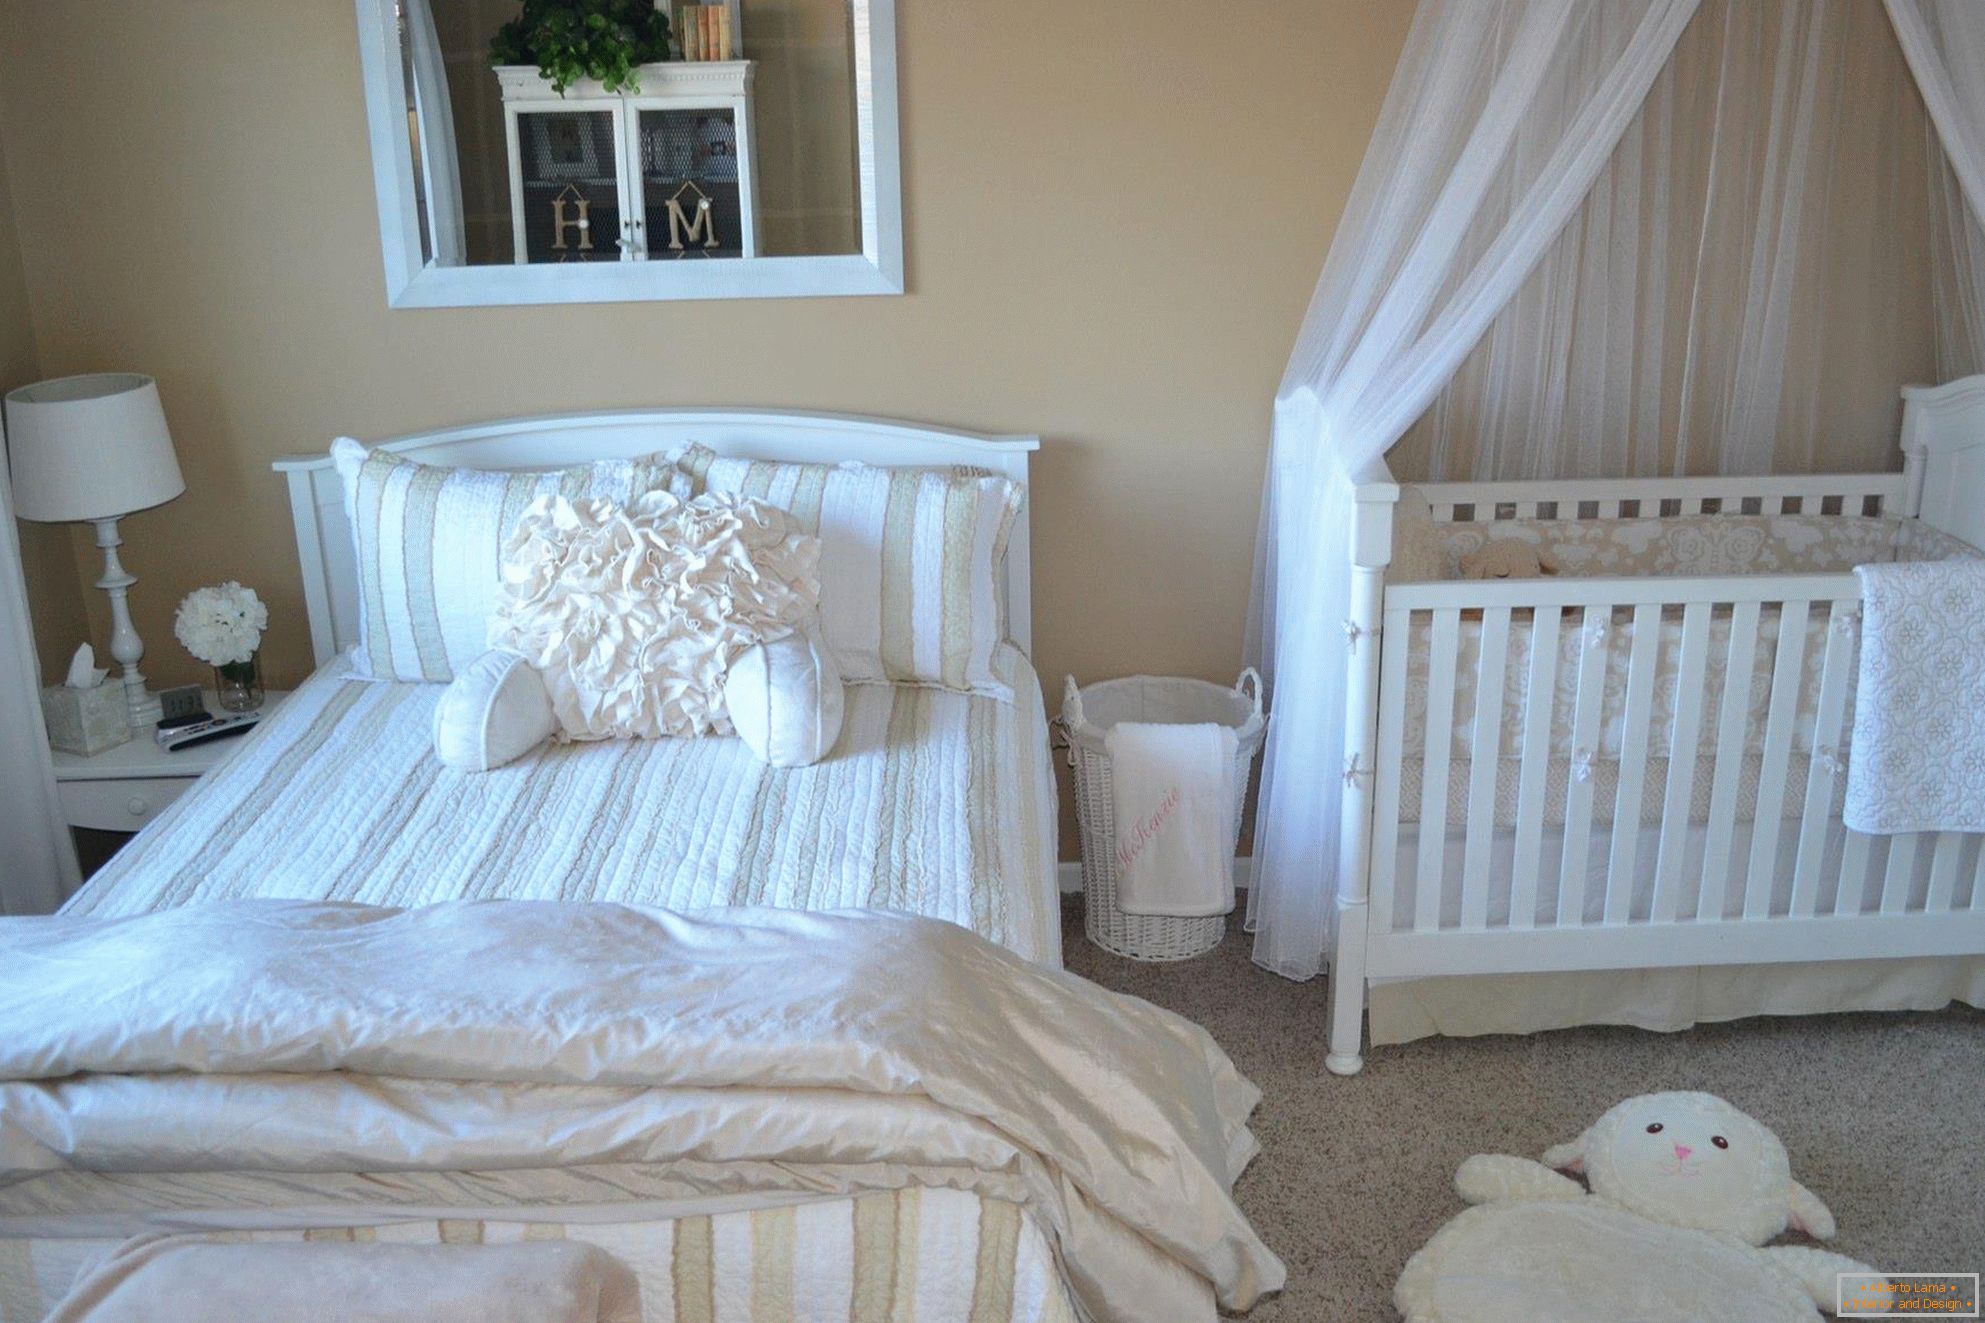 Peščene stene in belo pohištvo v spalnici